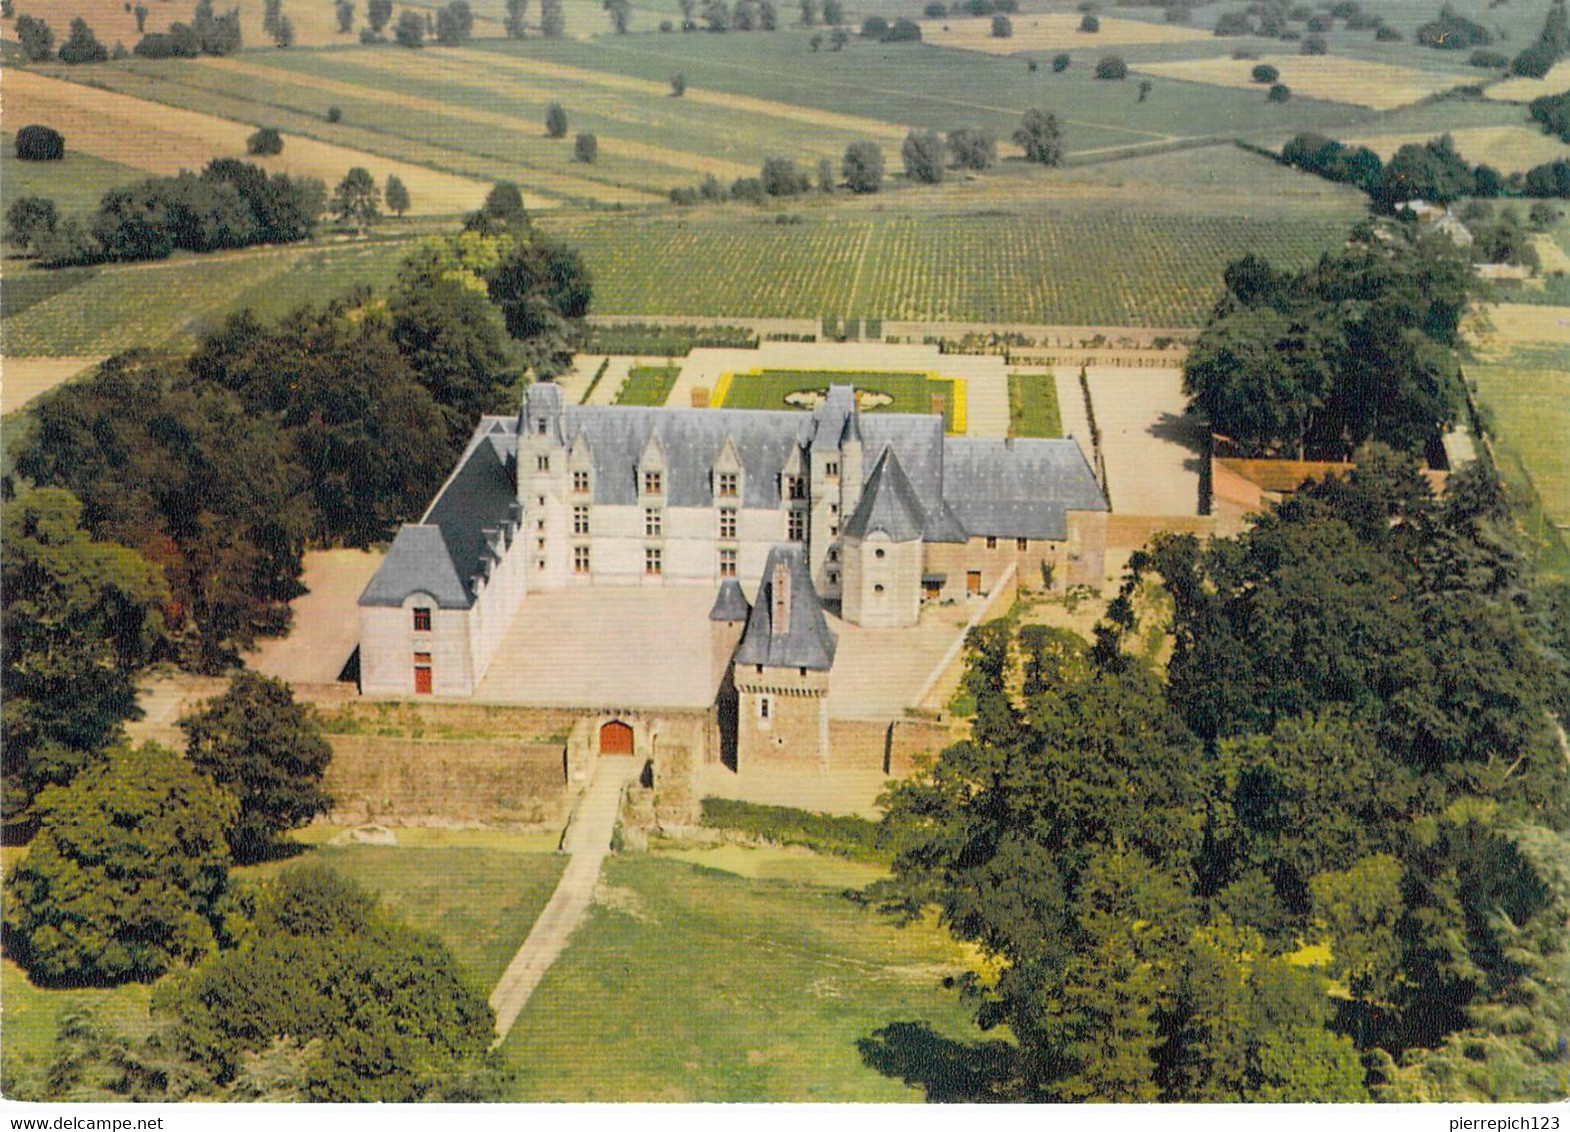 44 - Haute Goulaine - Vue Aérienne - Le Château De Goulaine (XVe Siècle) - Façade Principale - Haute-Goulaine